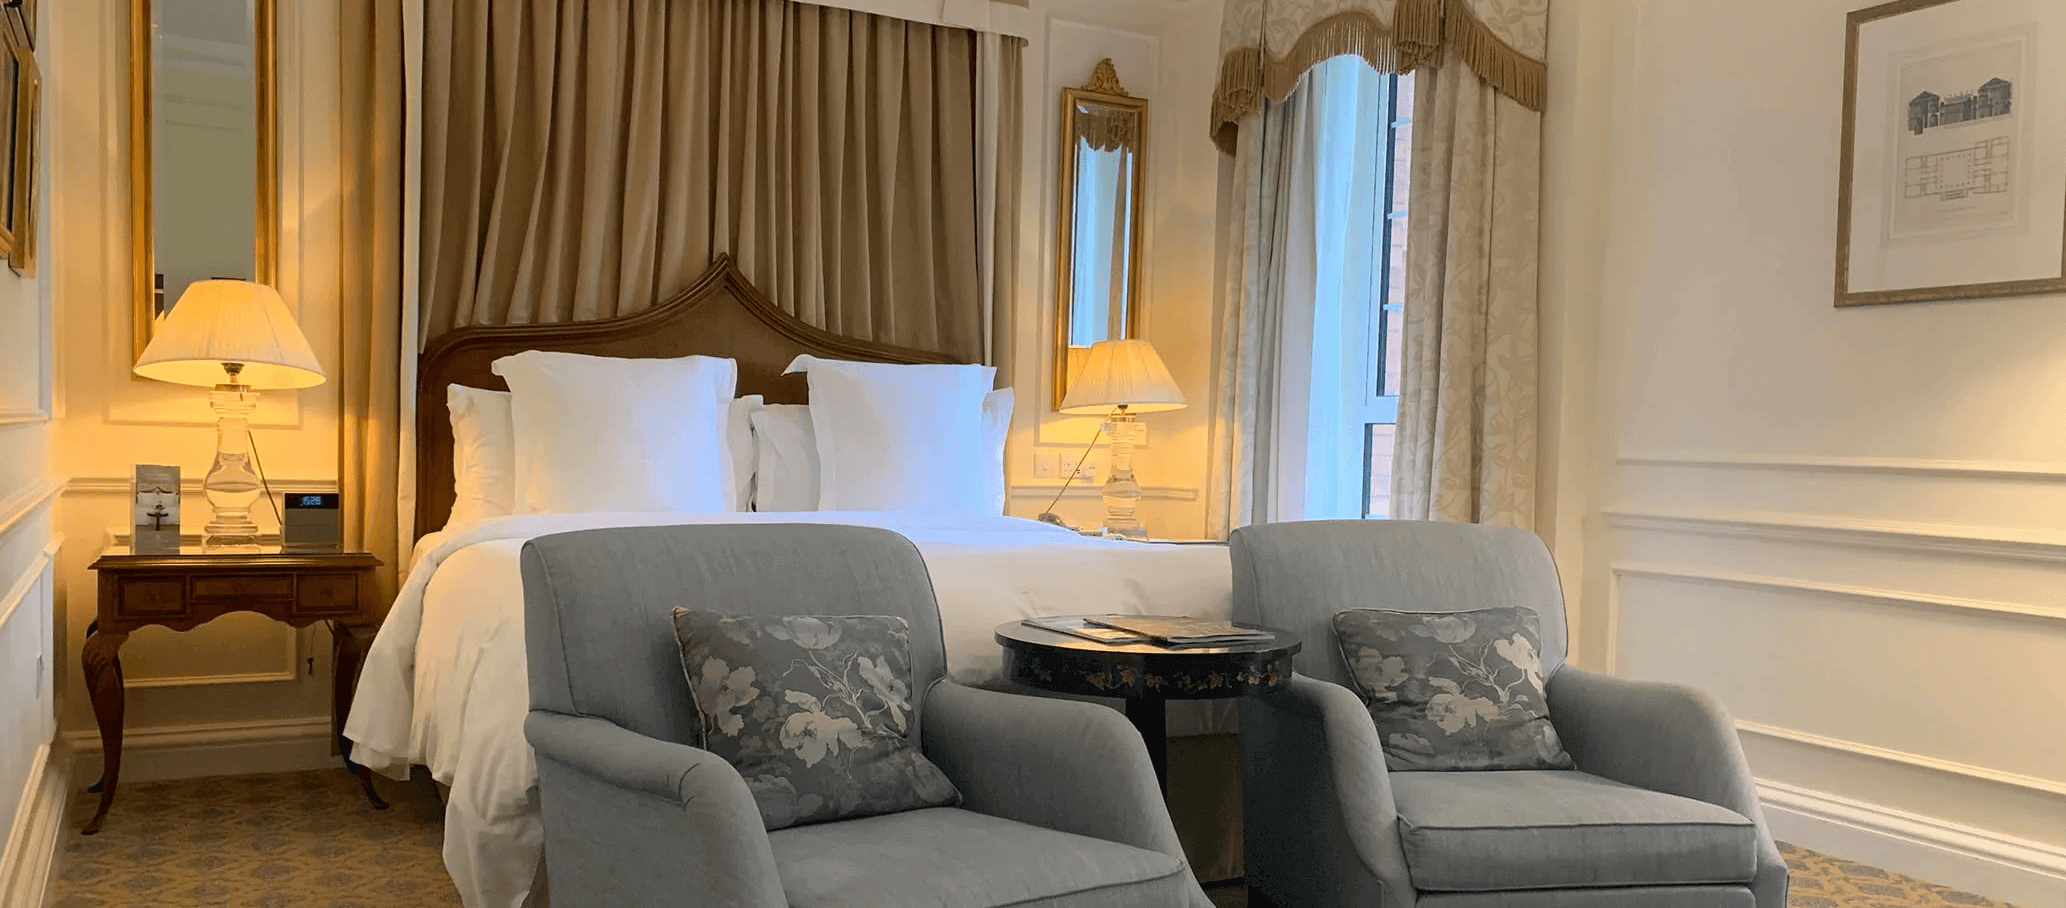 FOUR SEASONS HOTELS, AVUSTRALYA'nın MELBOURNE ŞEHRİNDE AÇILIYOR bilgi